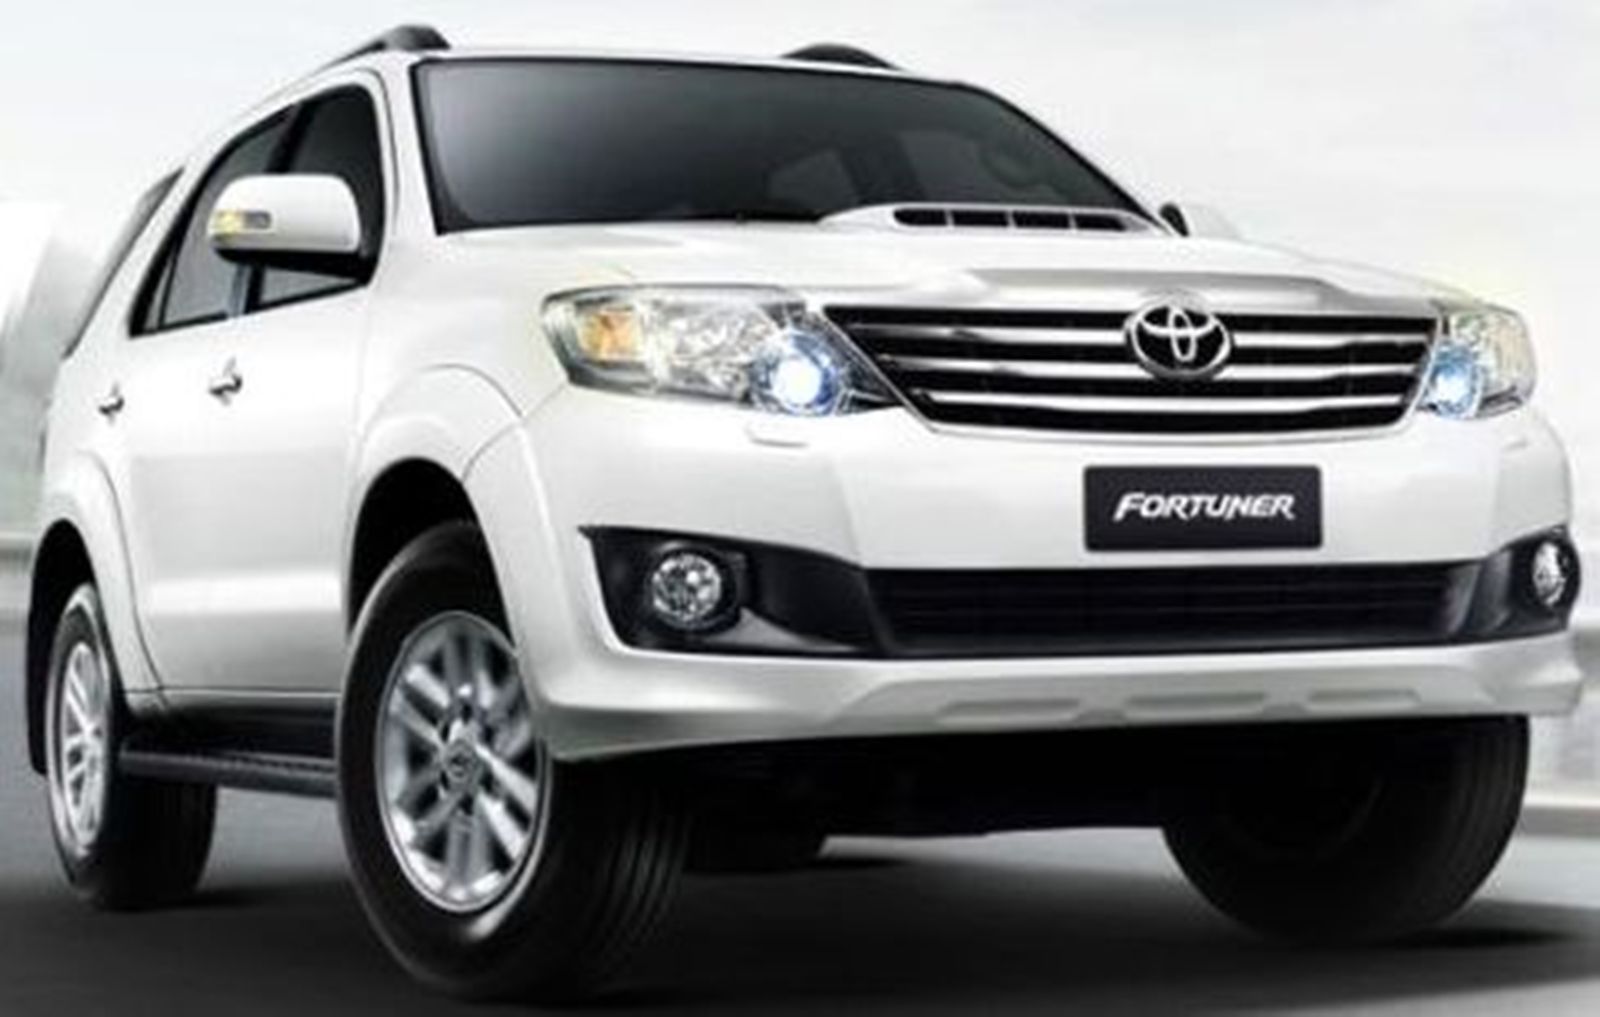 Toyota fortuner thailand 2013 price